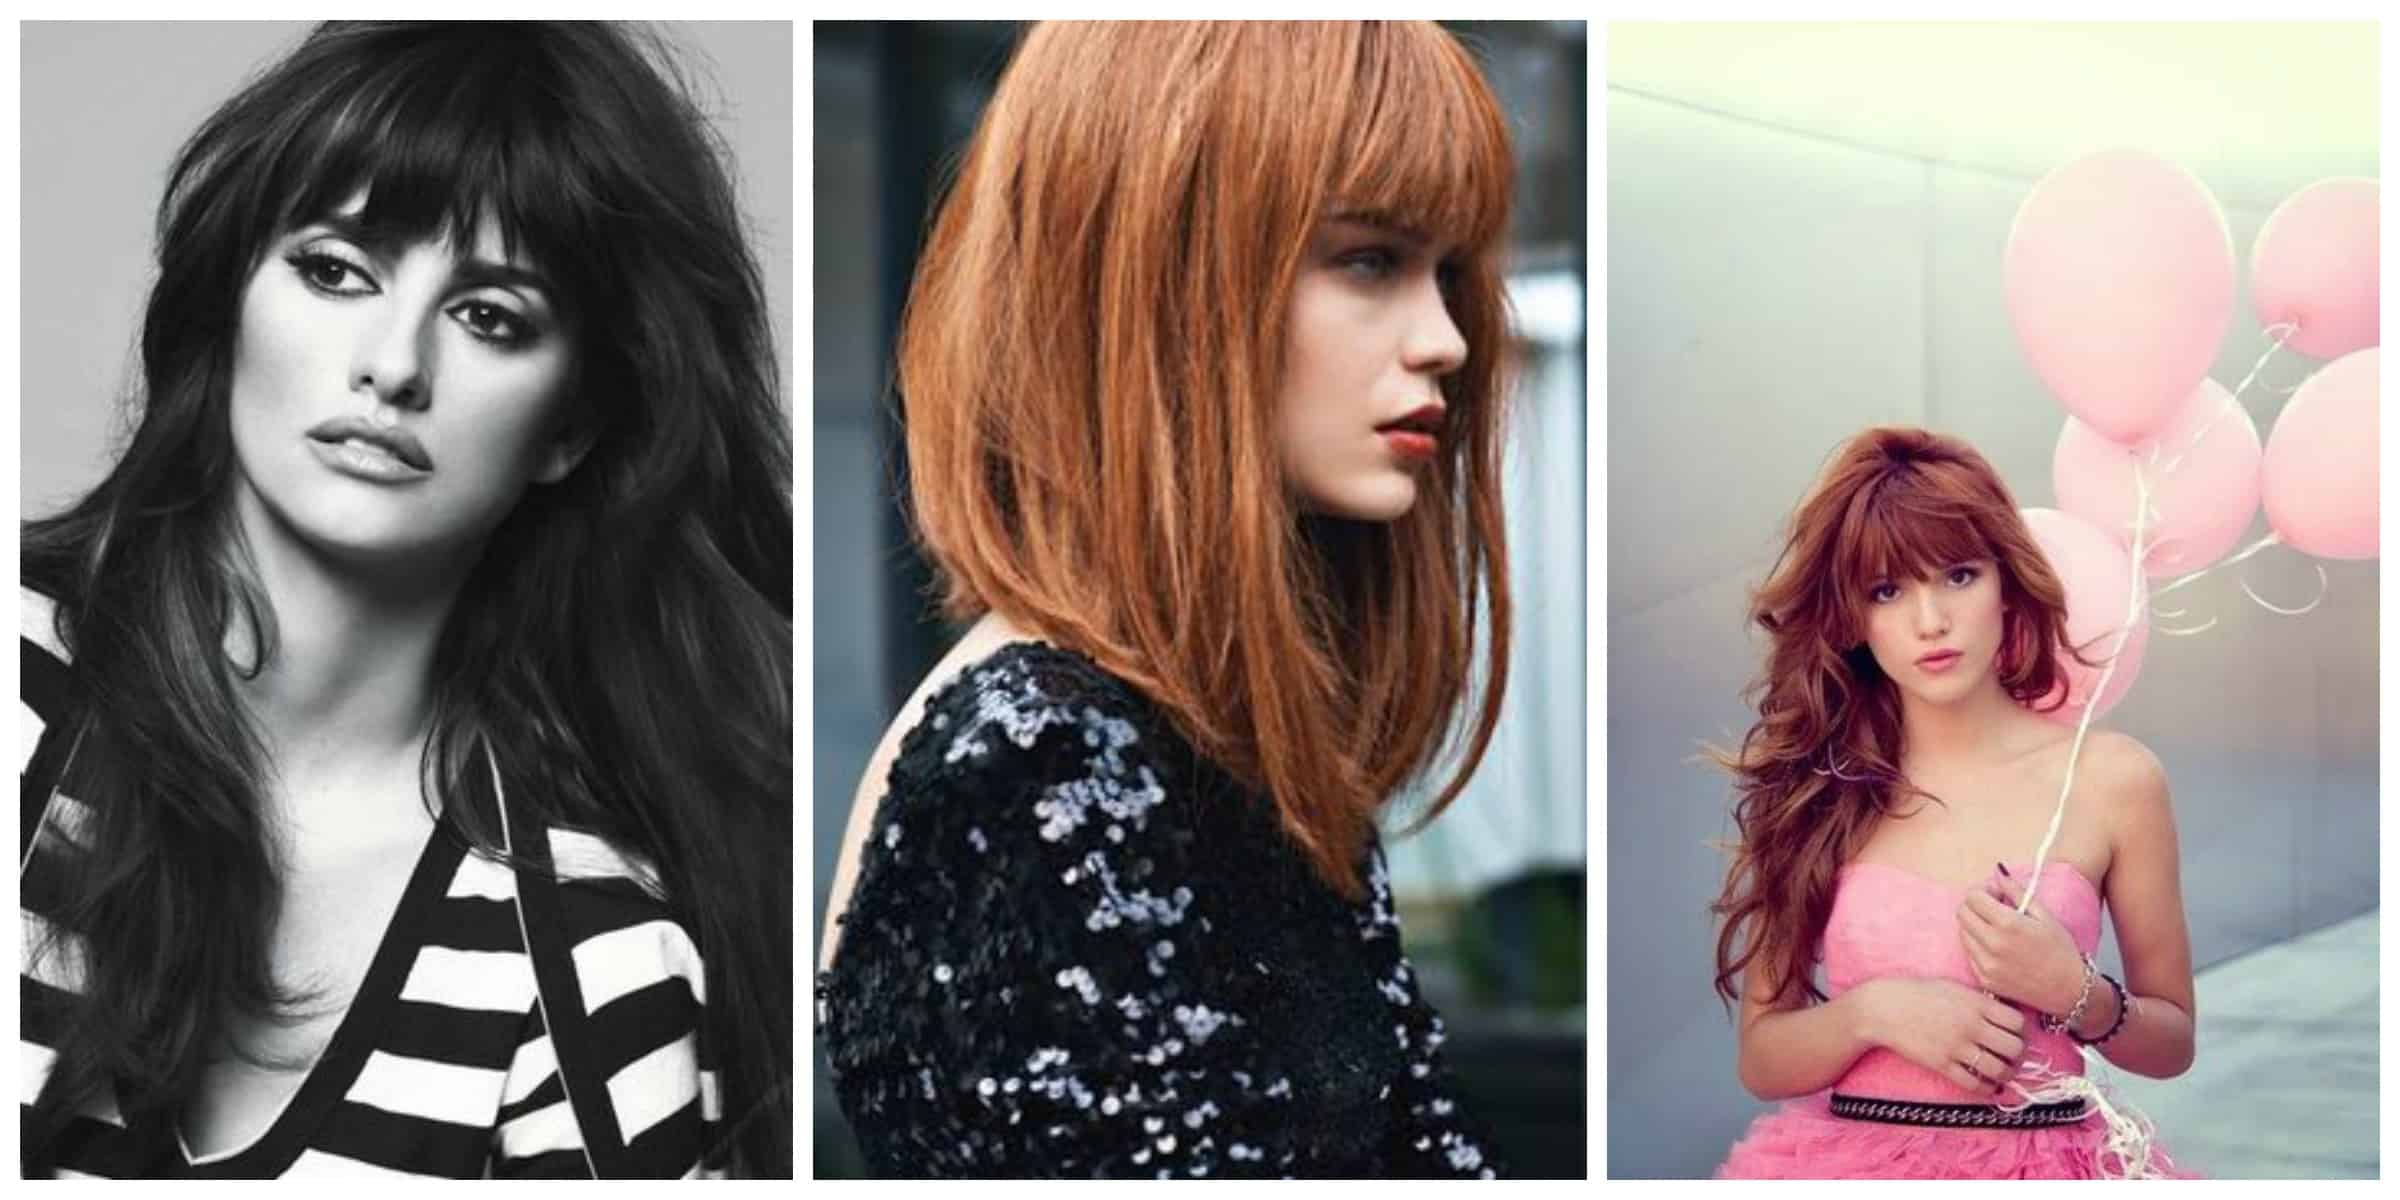 4 BANGS Hairstyles To Bang Or Not To Bang Fashion Tag Blog